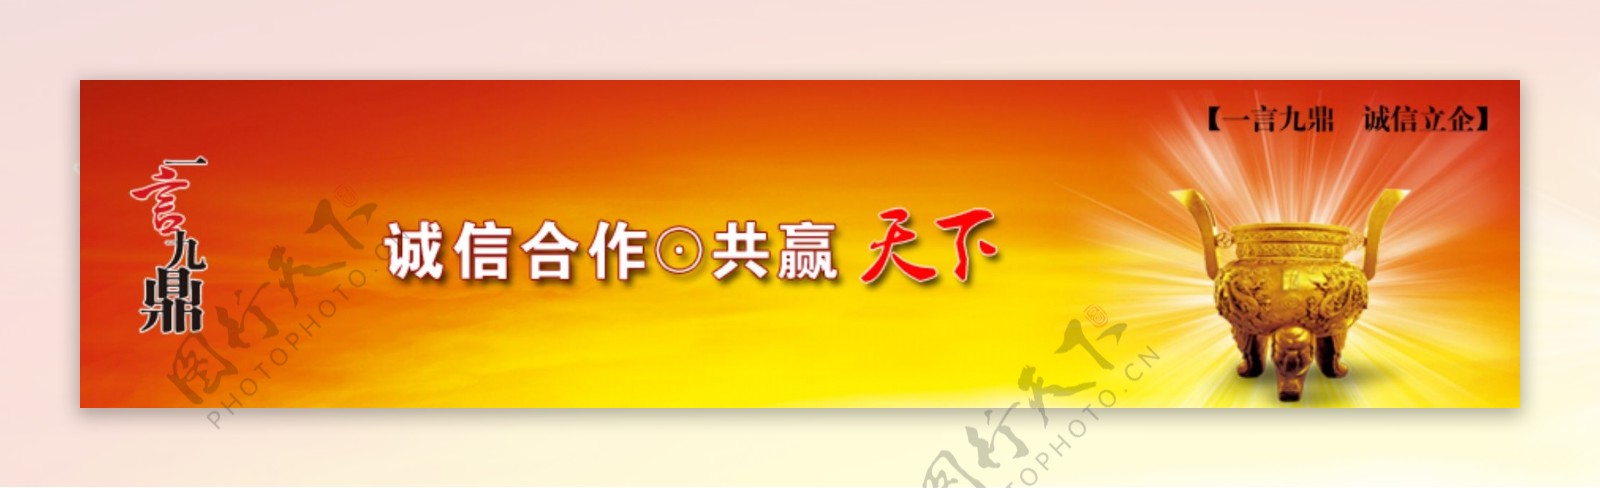 企业文化网页banner图片